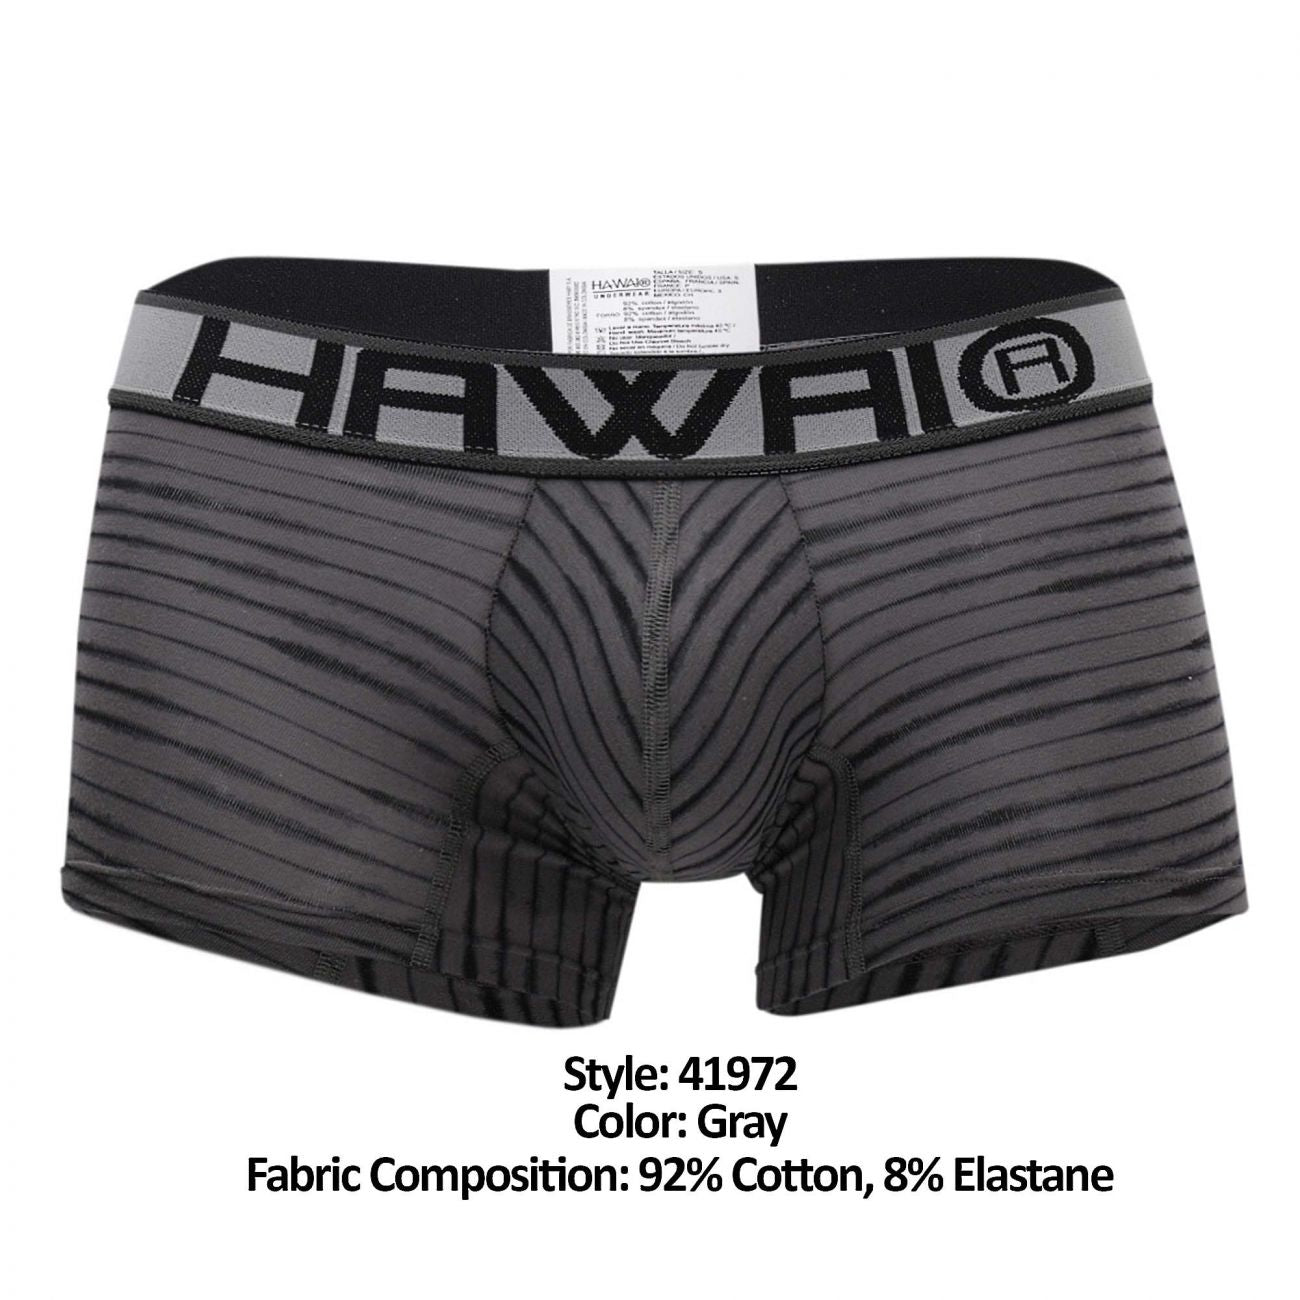 HAWAI 41972 Boxer Briefs Color Gray